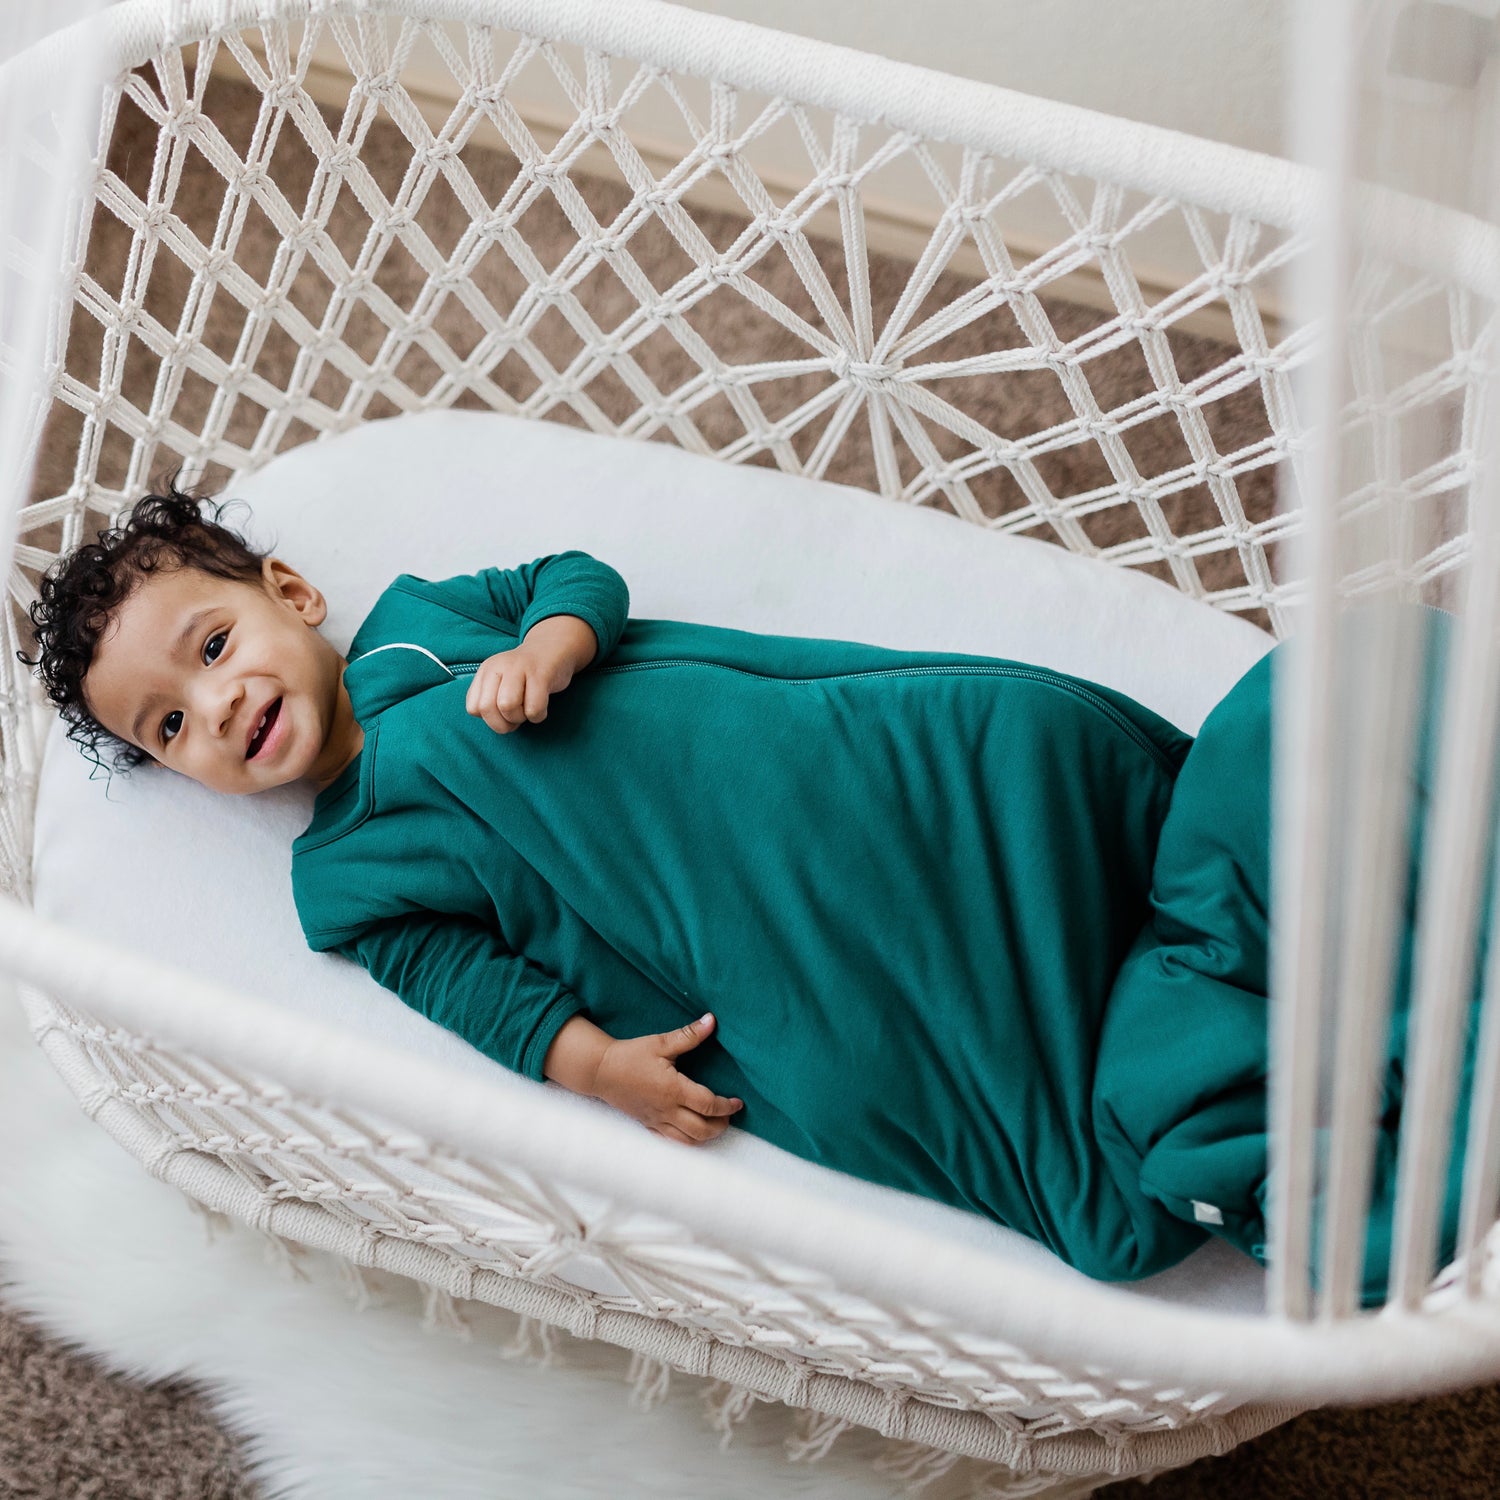 How Safe are Baby Hammocks for Sleep?